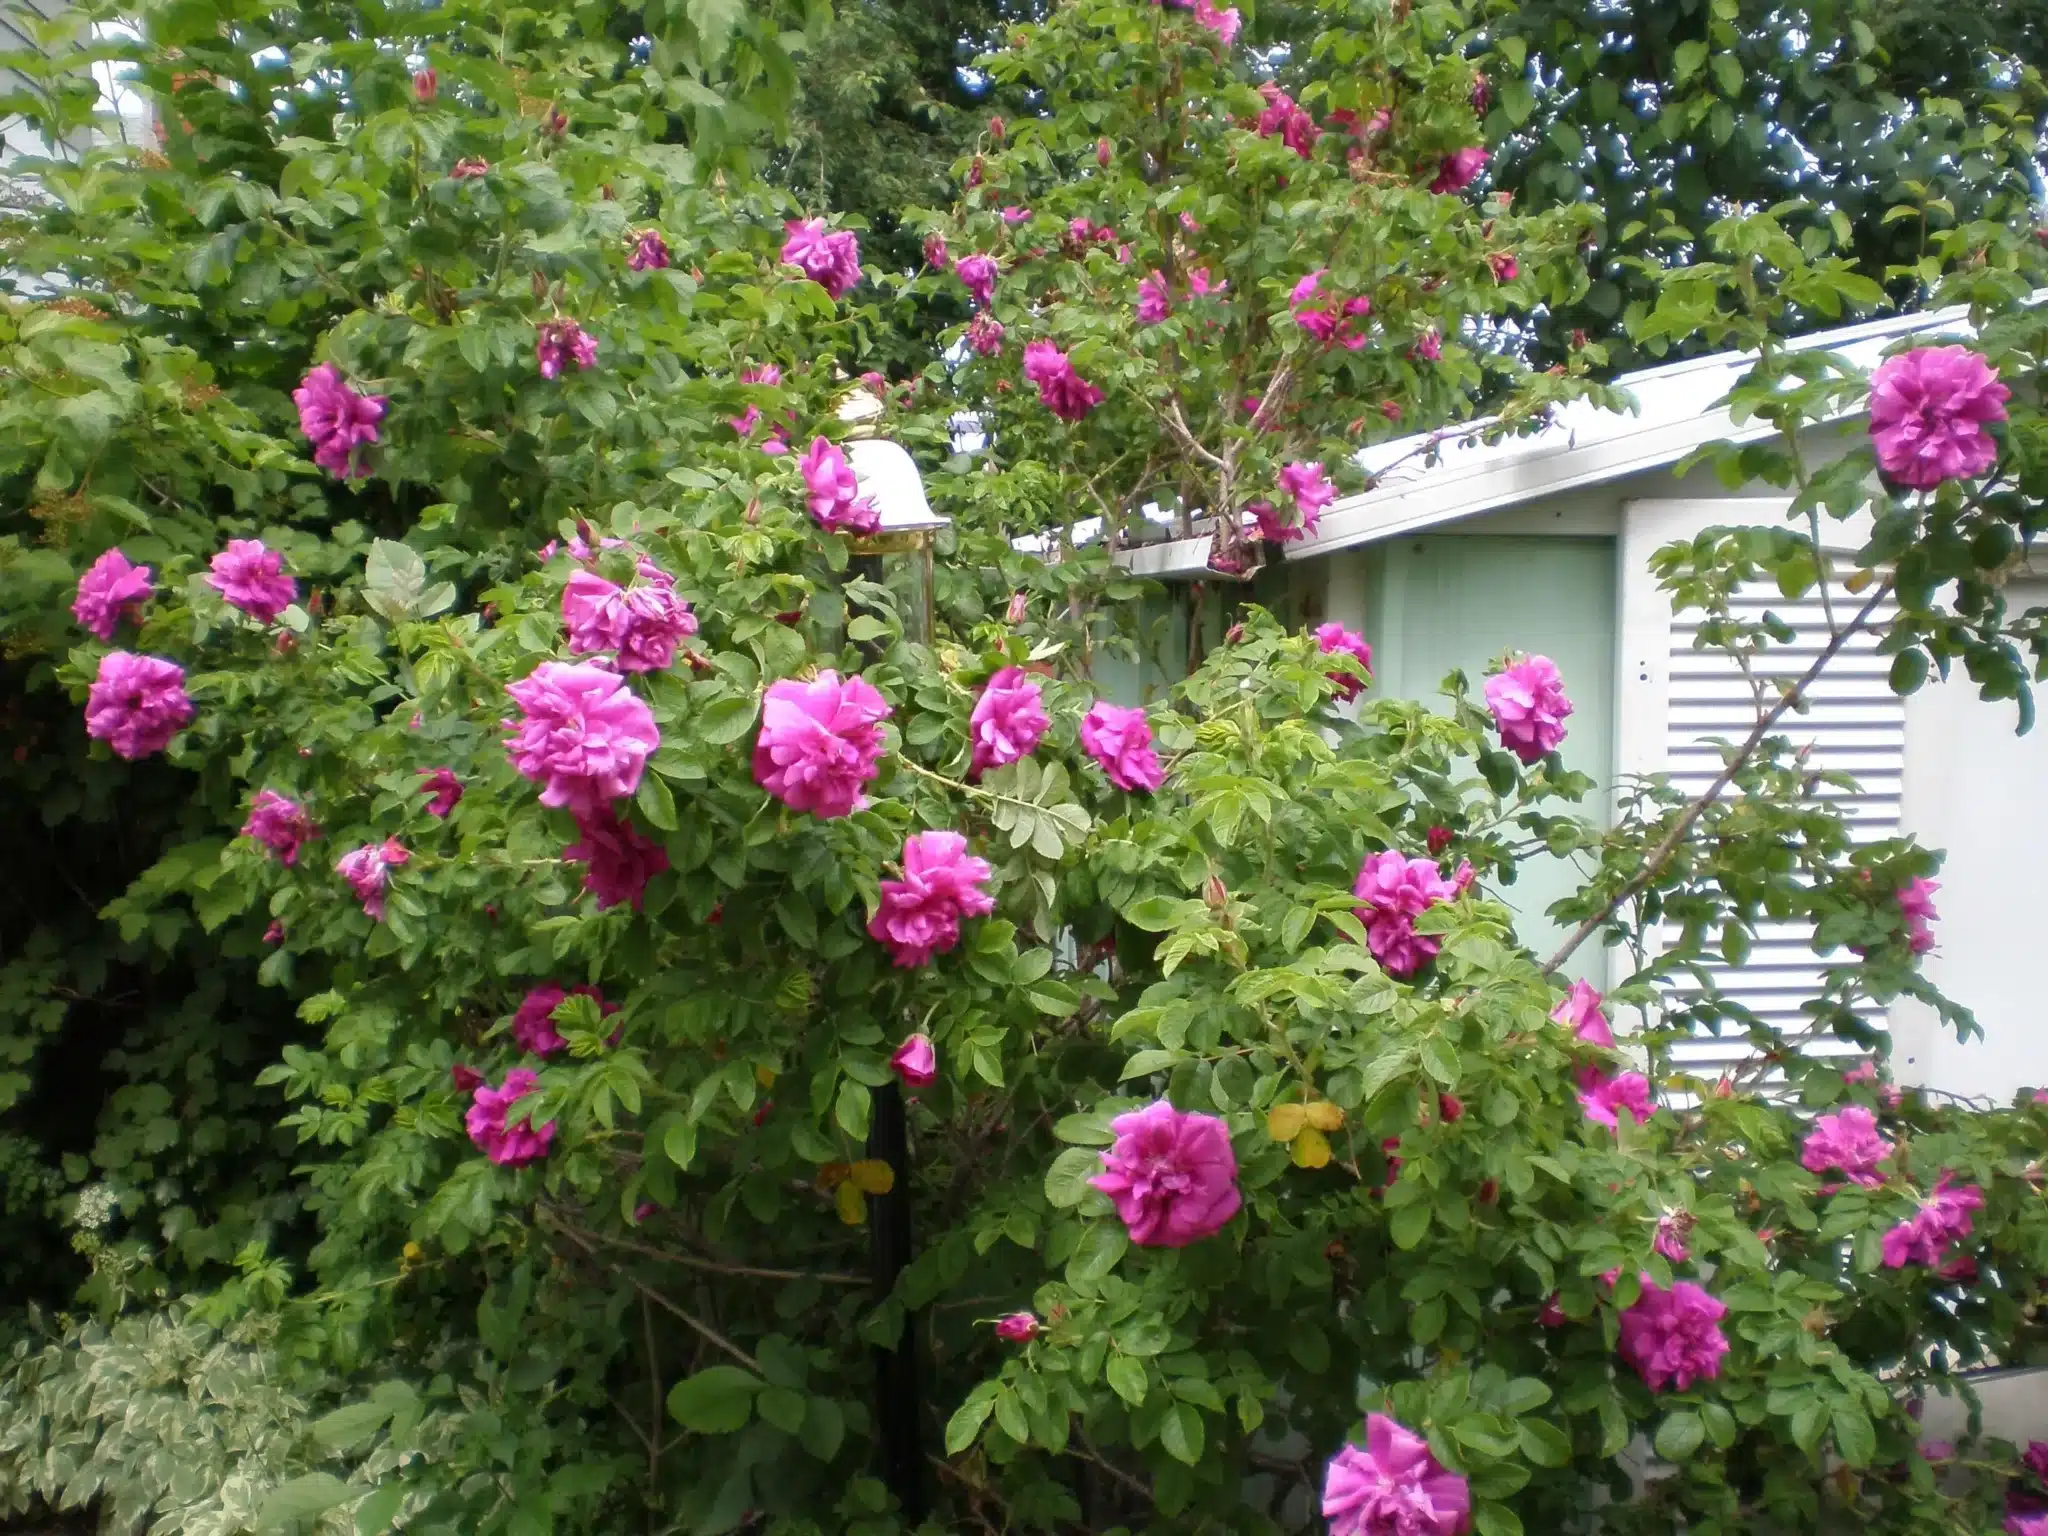 Large blooming pink rose bush